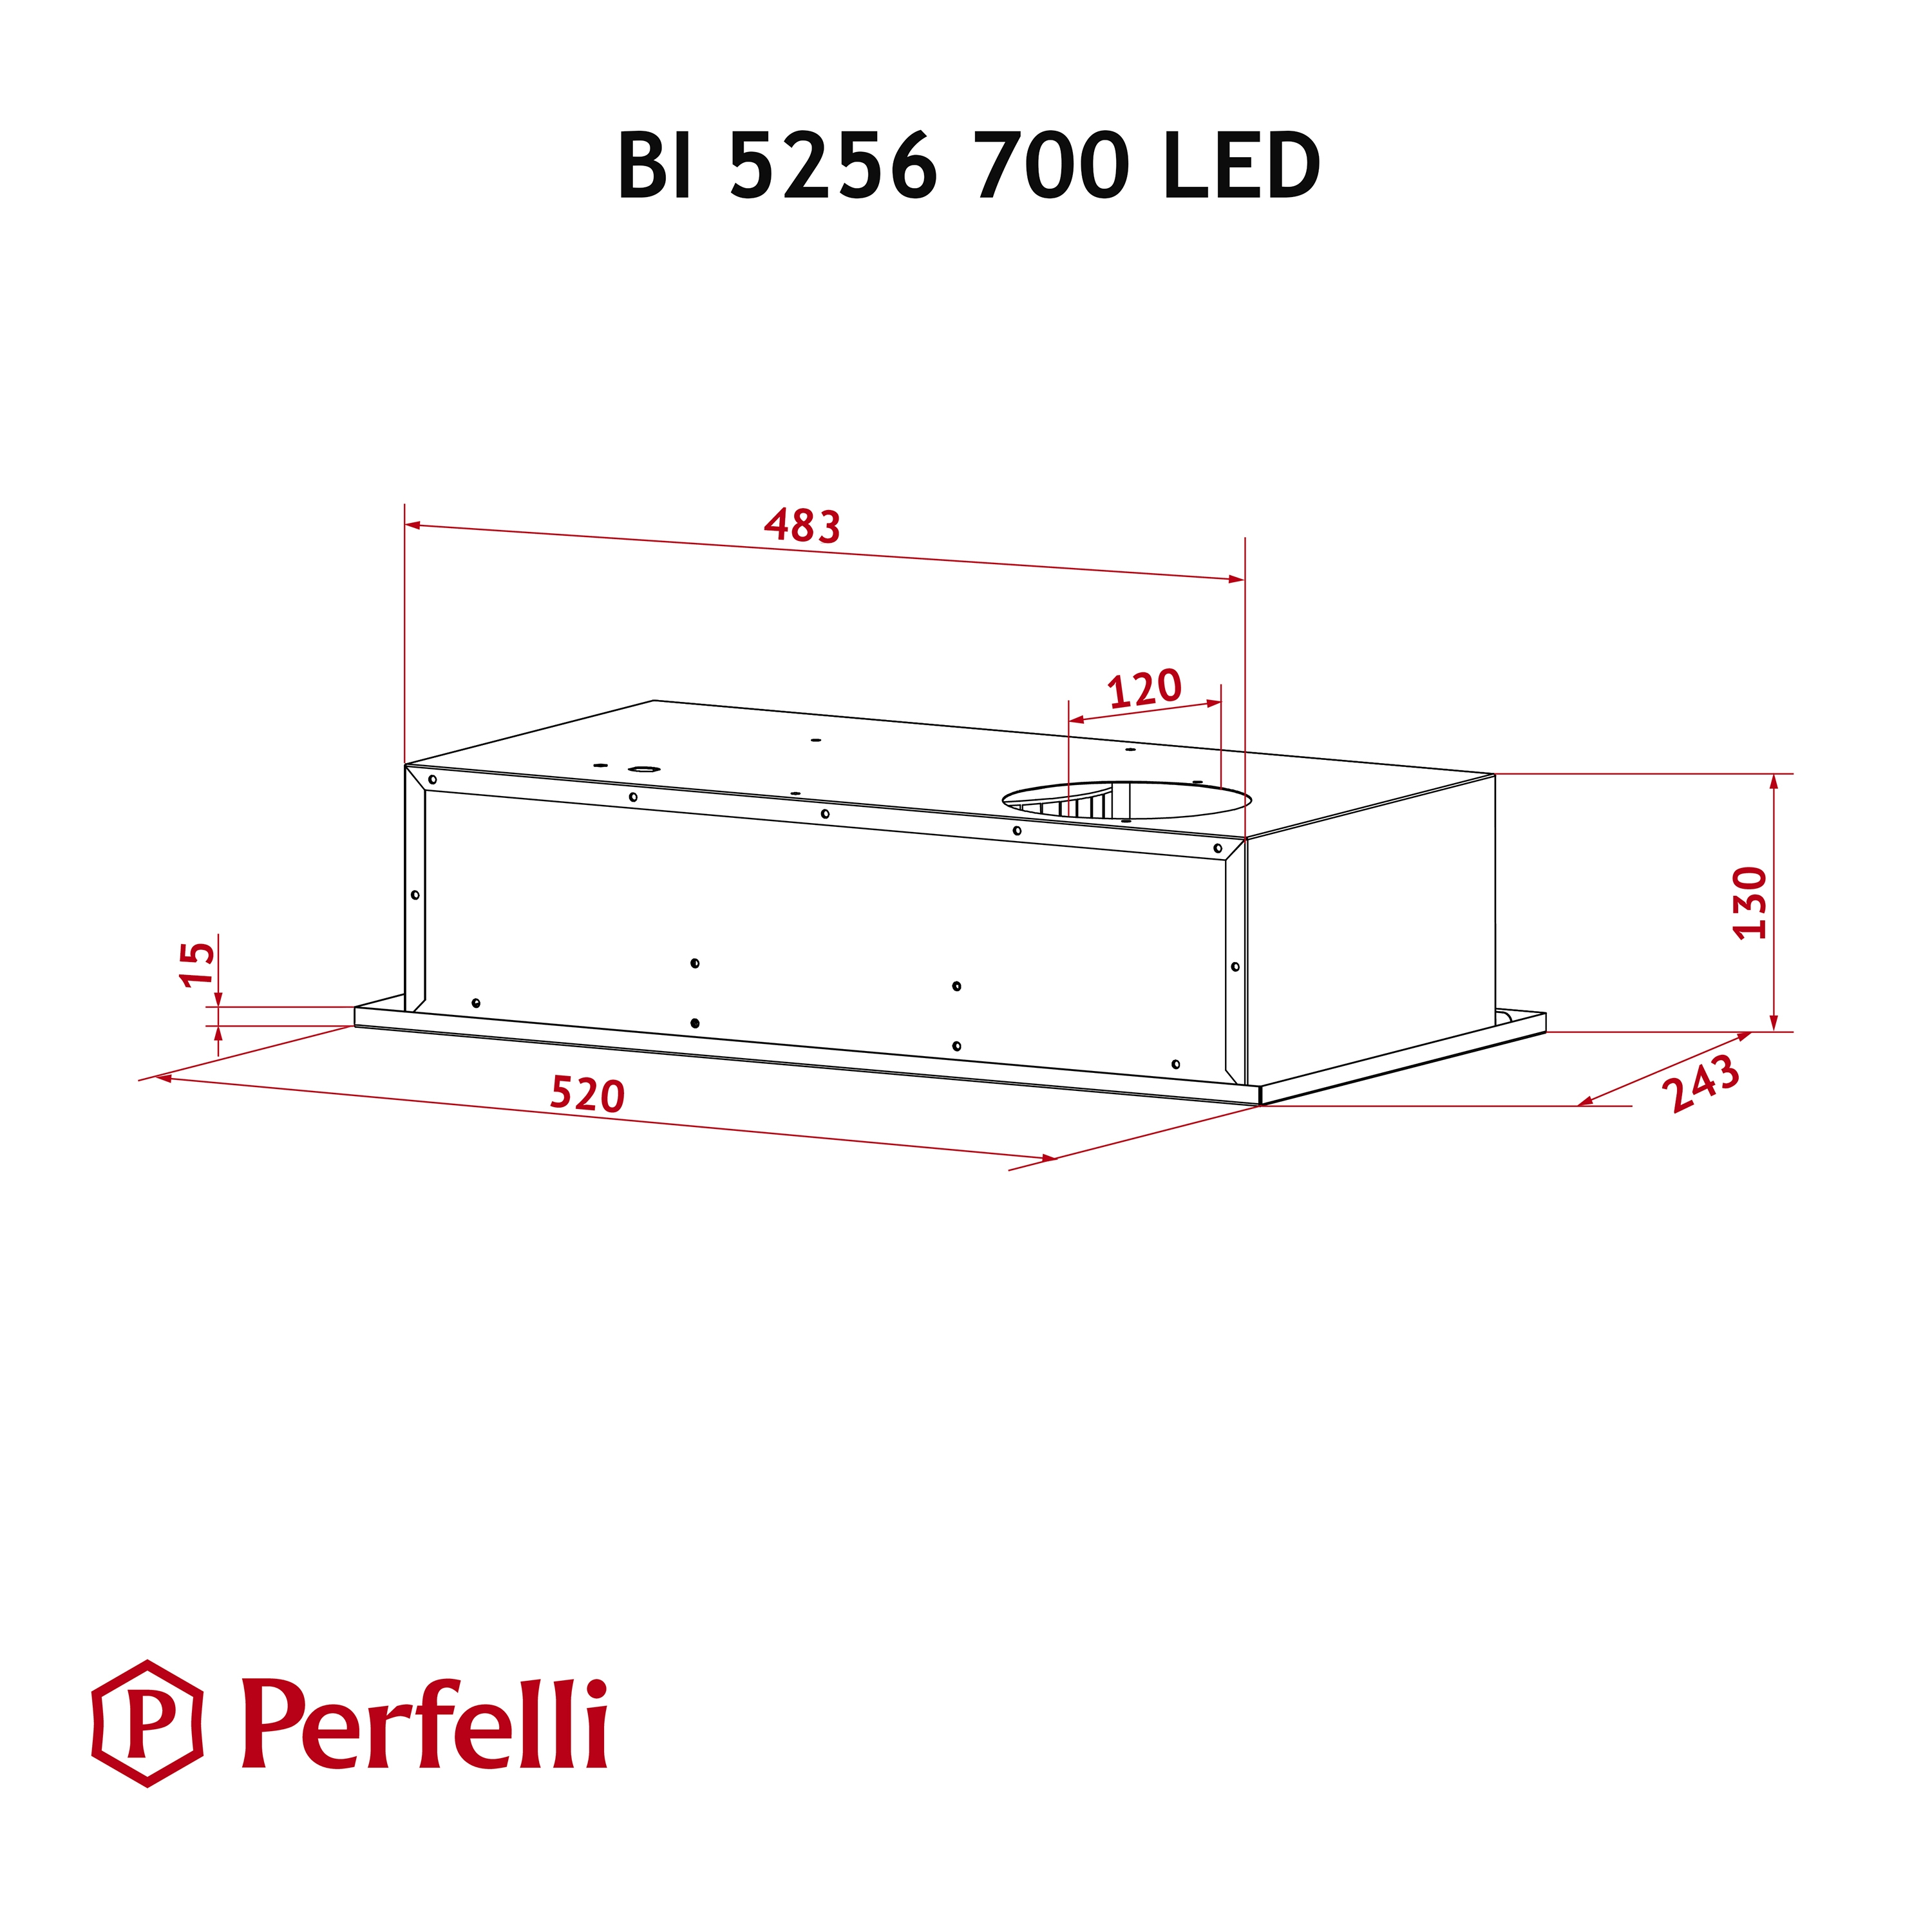 Perfelli BI 5256 BL 700 LED Габаритные размеры